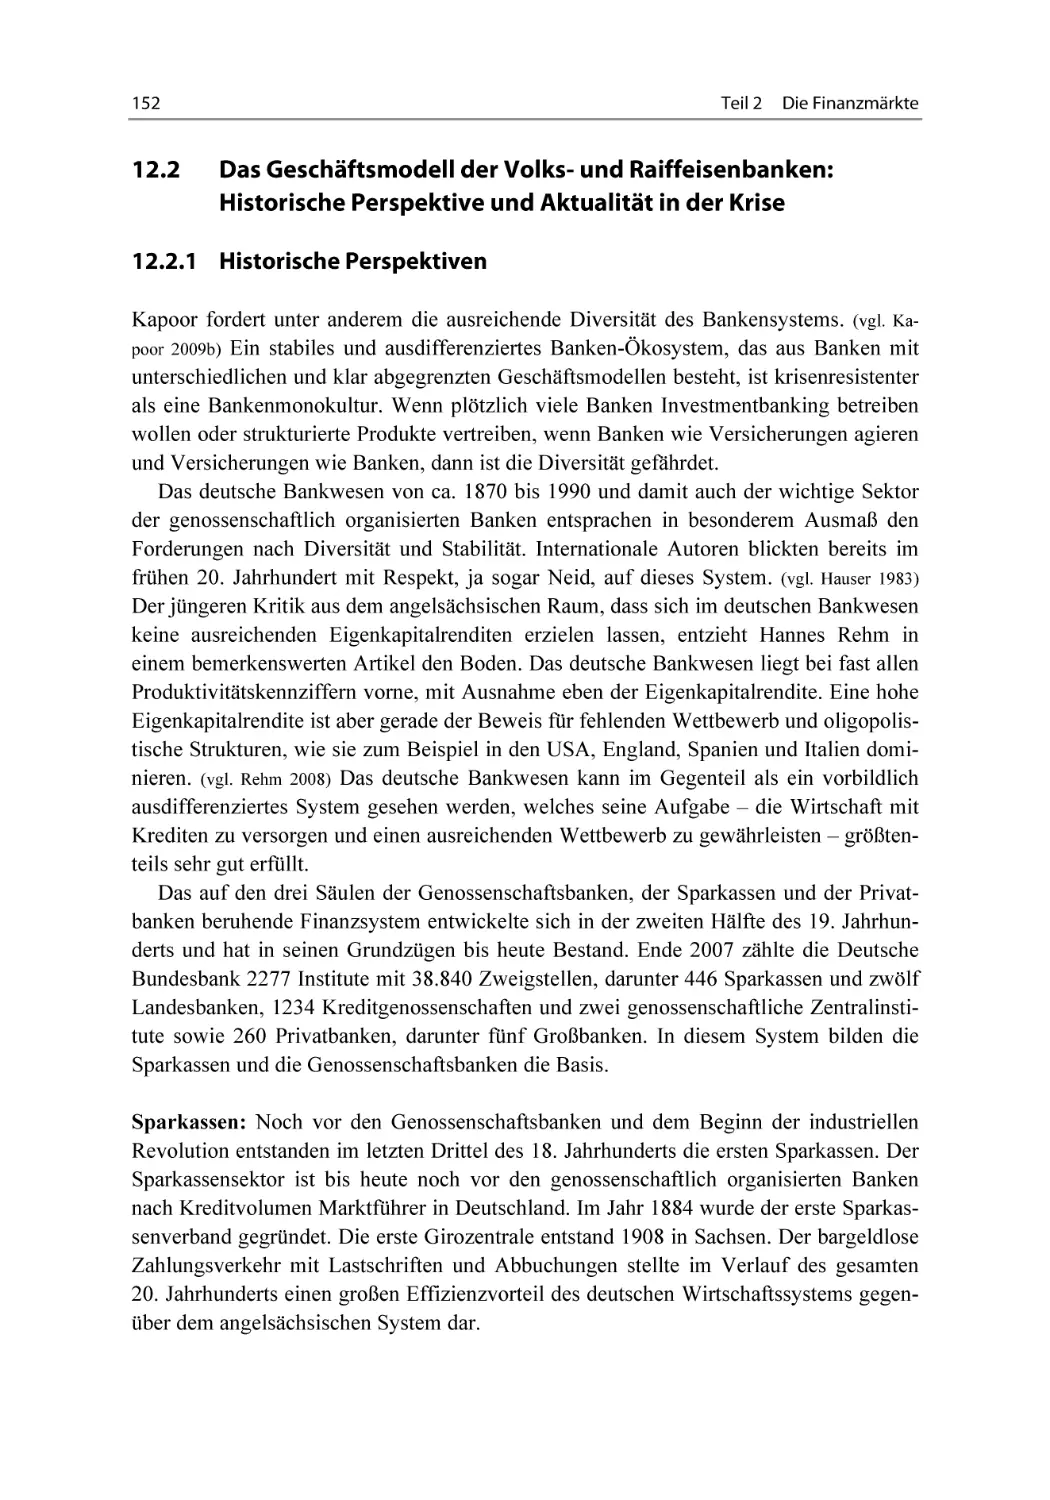 12.2 Das Geschäftsmodell der Volks- und Raiffeisenbanken
12.2.1 Historische Perspektiven